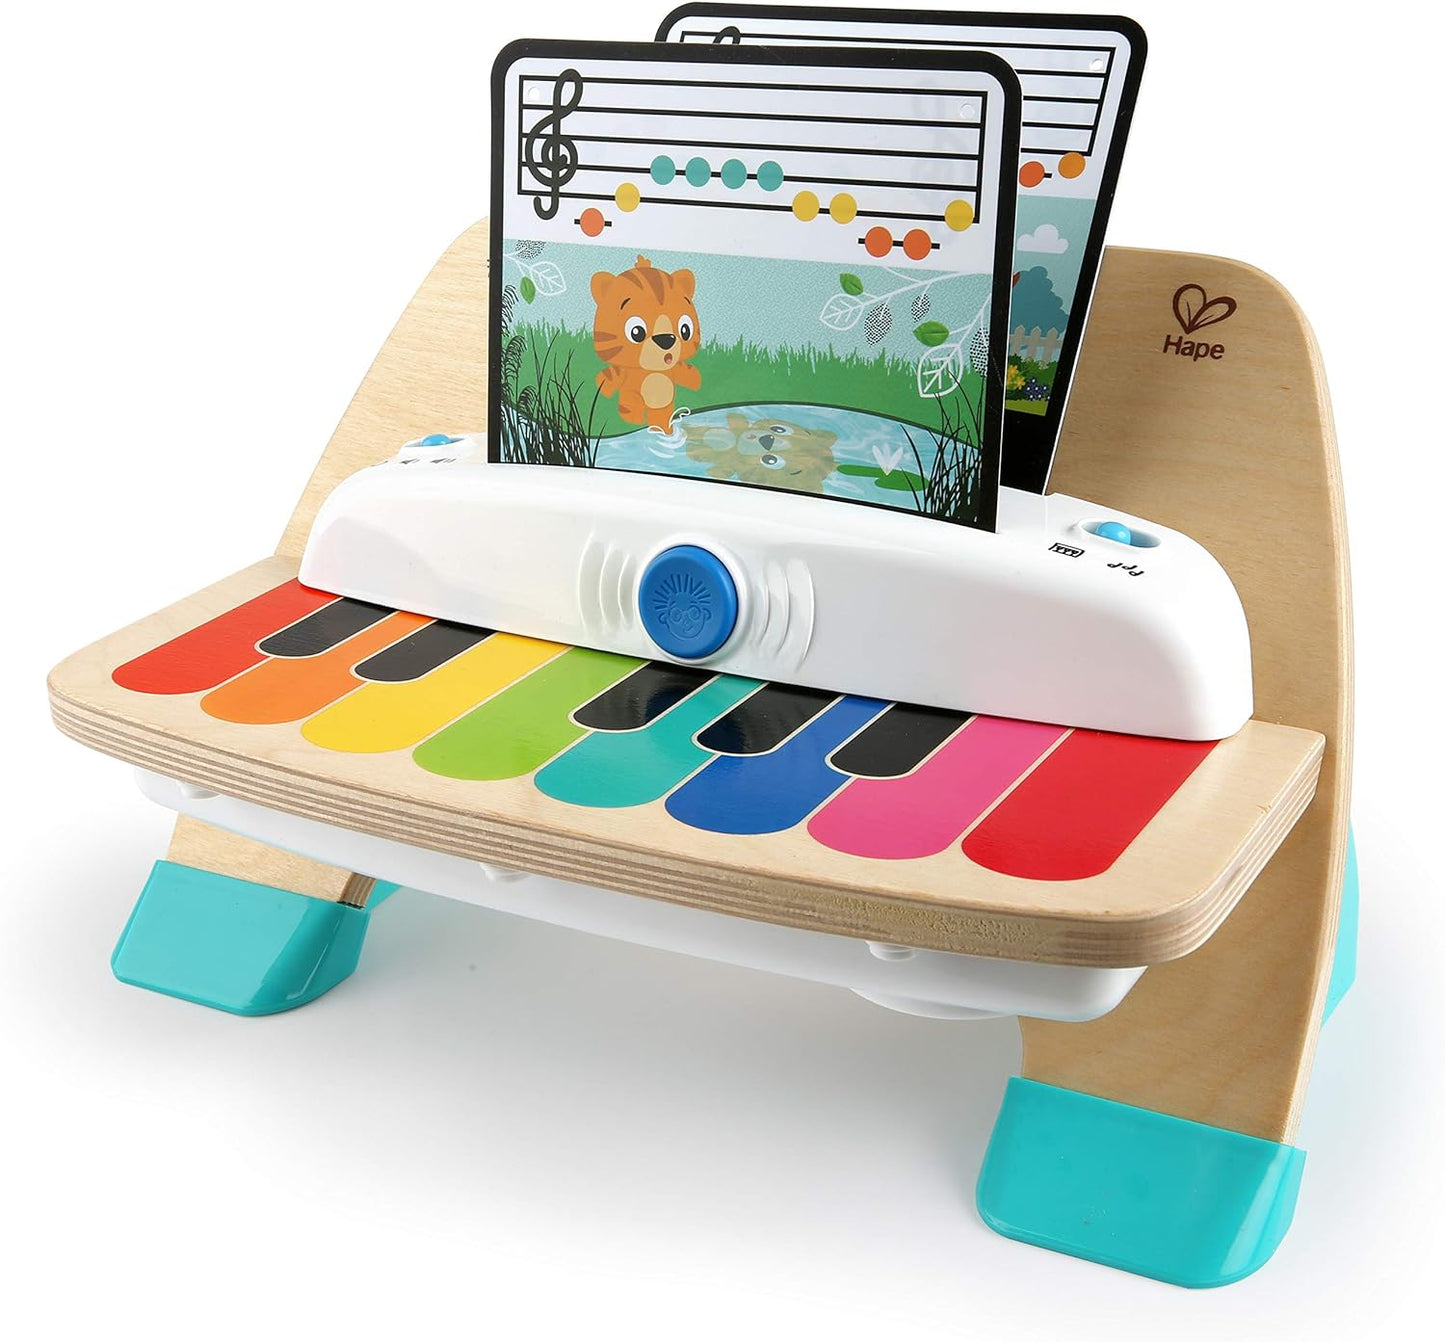 Baby Einstein Einstein Hape Magic Touch Piano Instrumentos de brinquedo musical de madeira para crianças, 2 modos de jogo, 6 músicas, controle de volume, idade 6 meses + e brinquedo musical de tambor de madeira Magic Touch, idades 6 meses mais